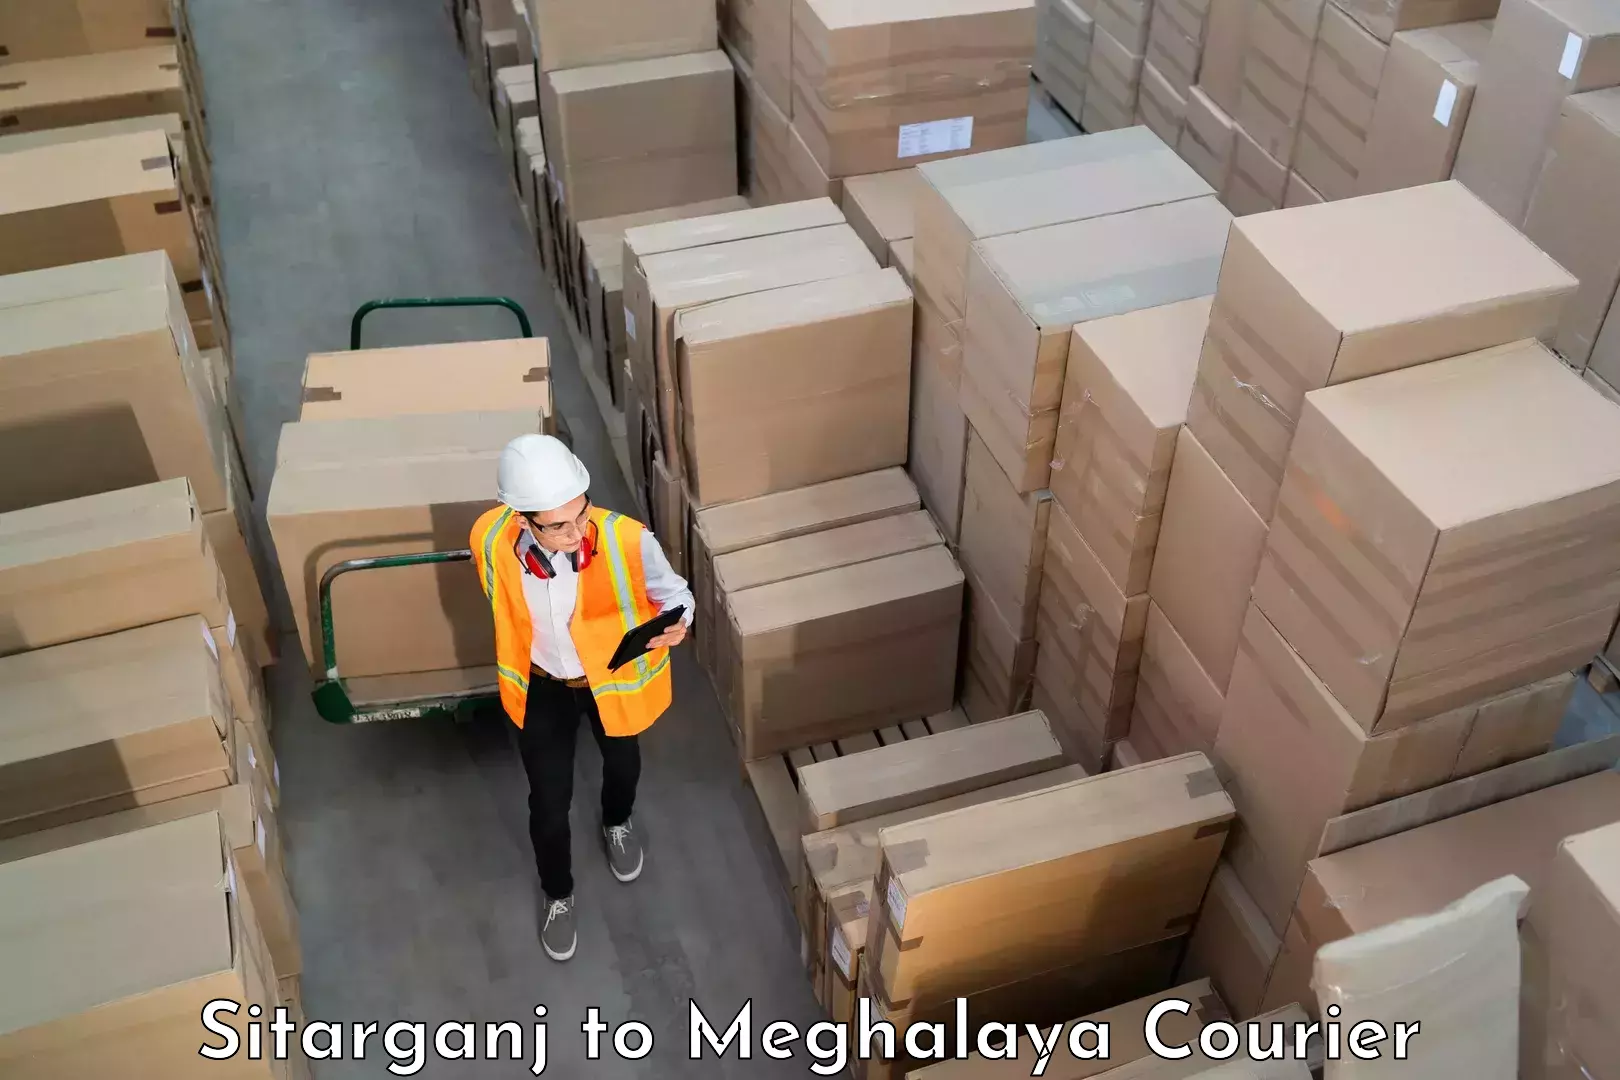 Baggage transport network Sitarganj to Meghalaya